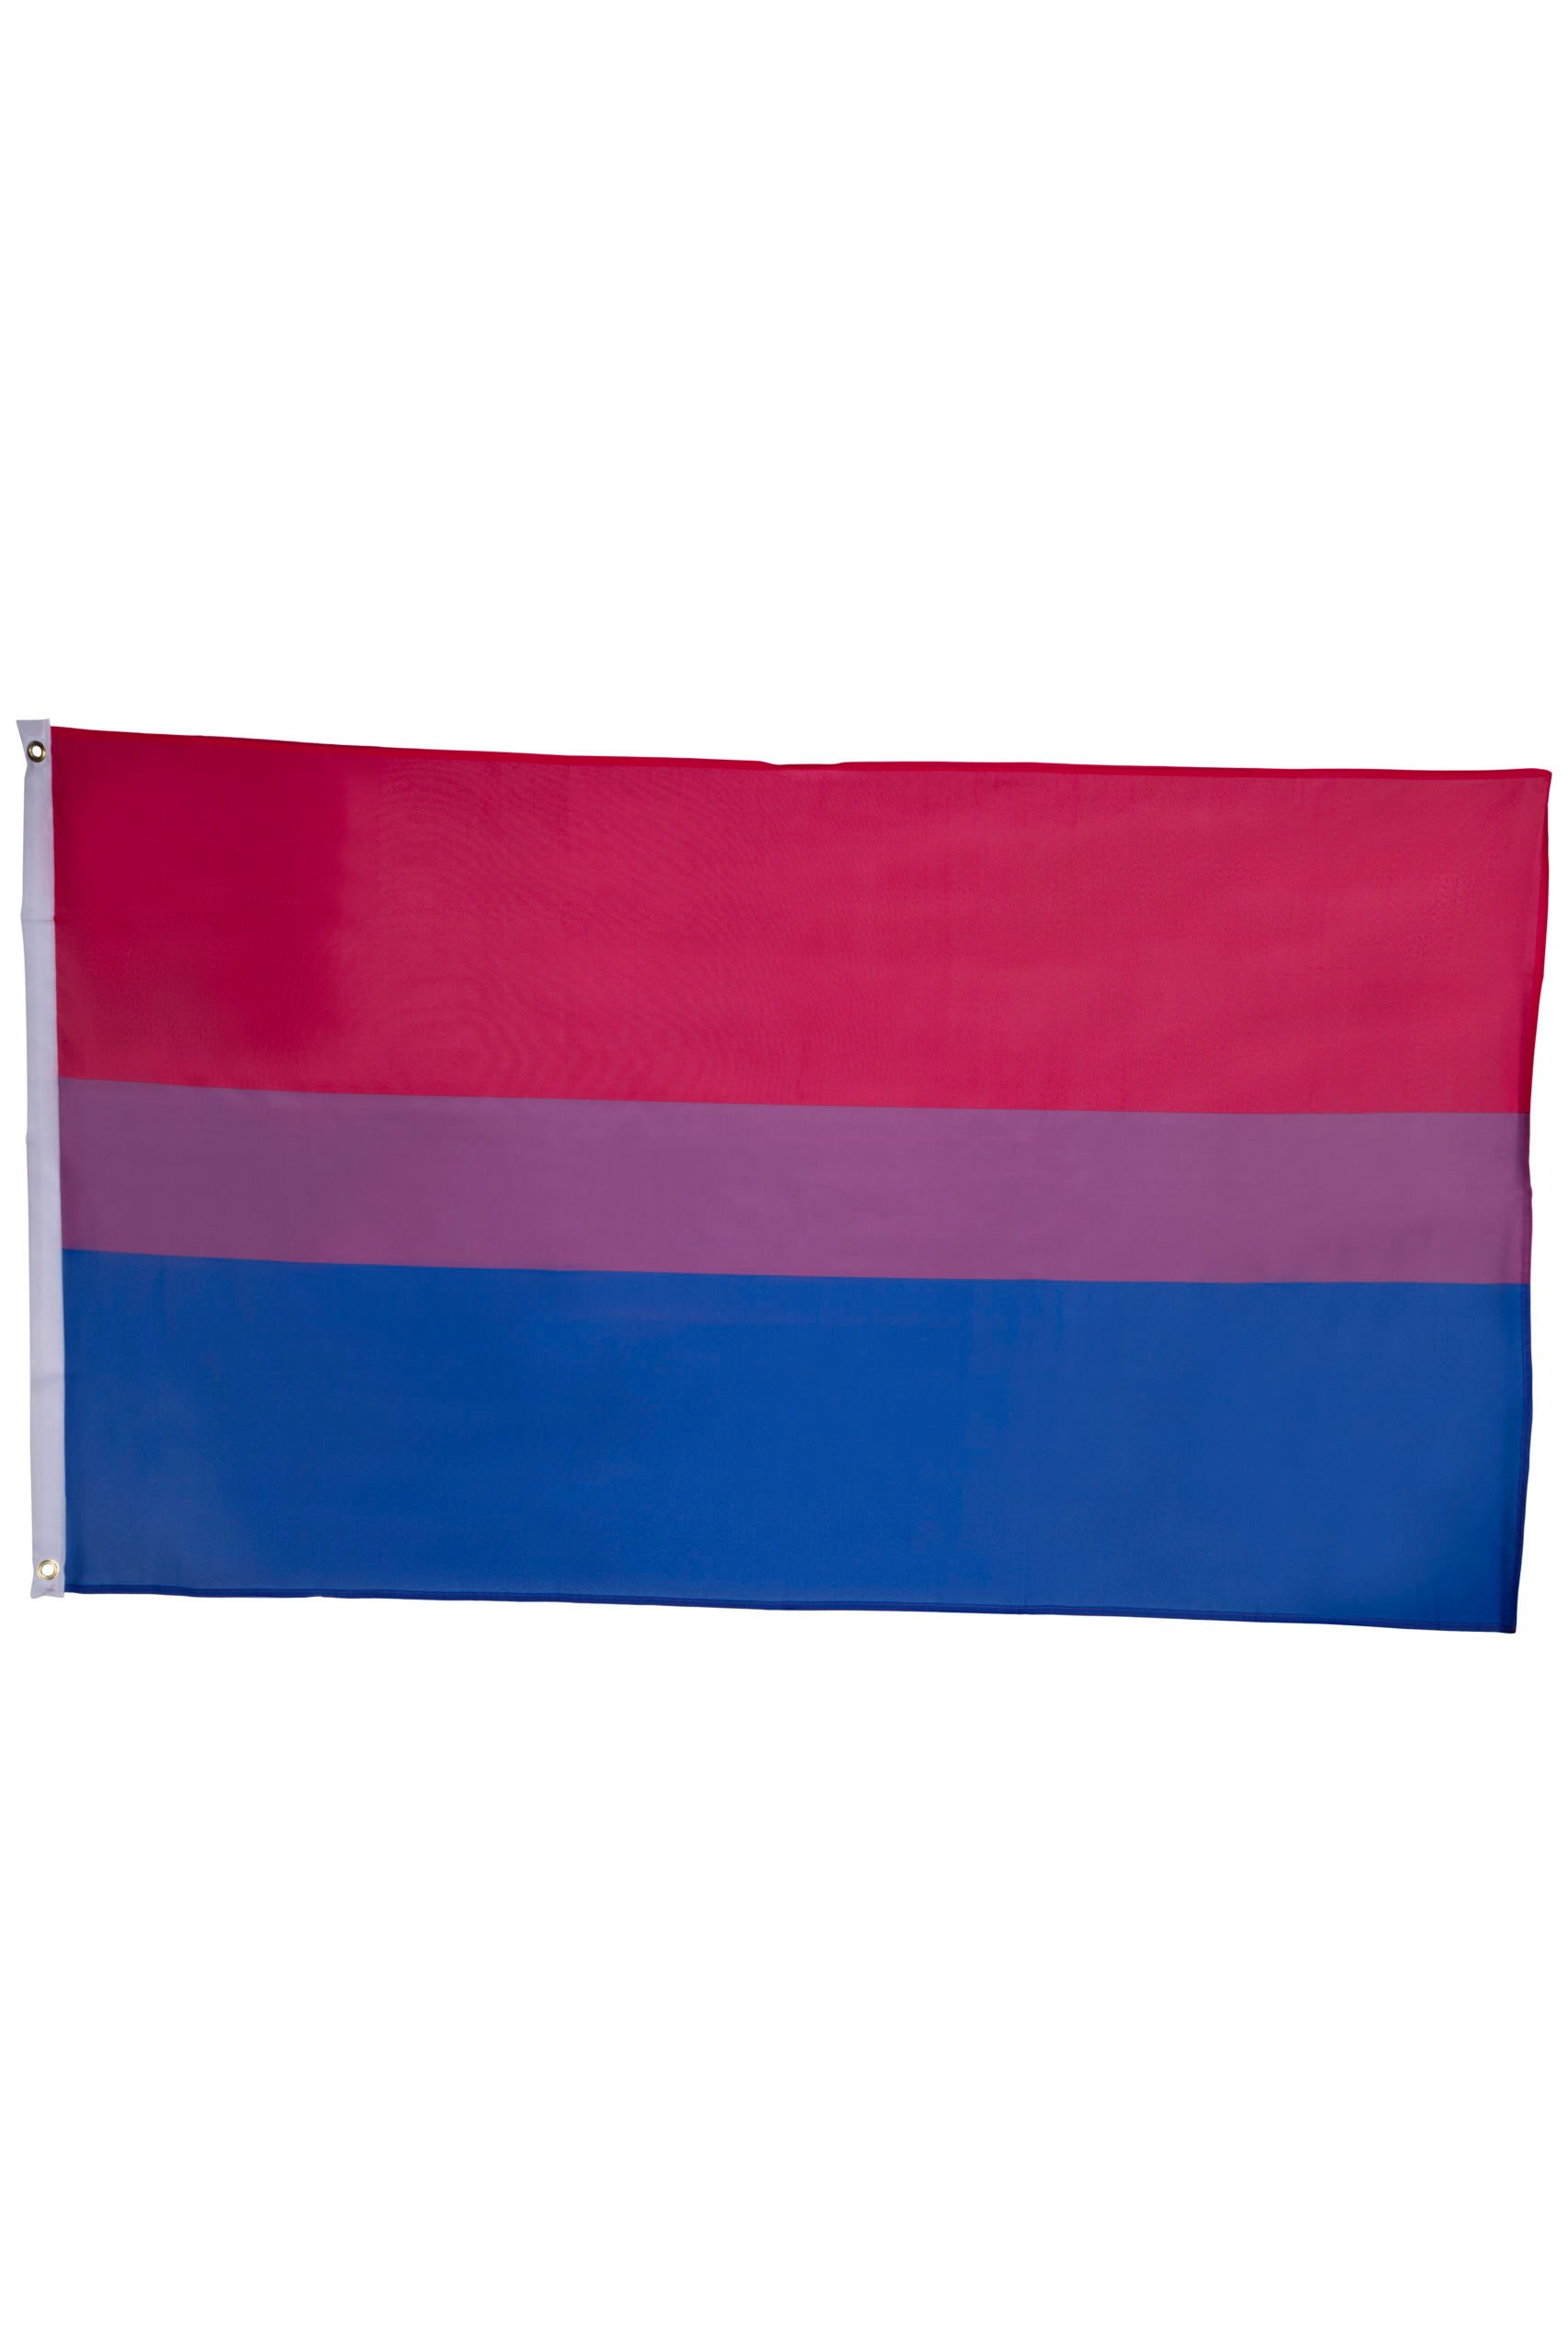 Bisexual Pride Flag Large 150 X 90 Cm Copenhagen Pride